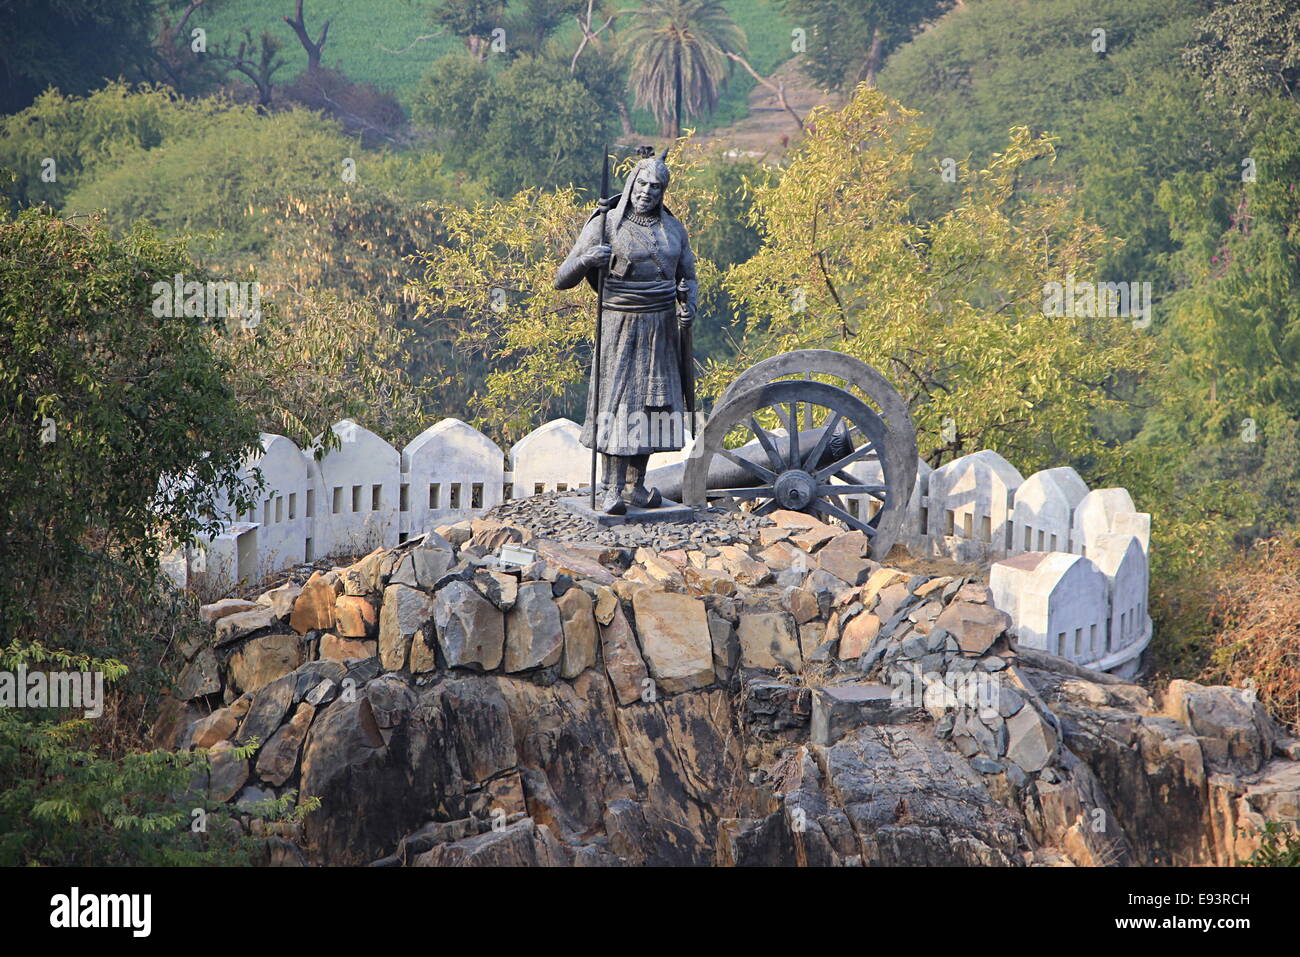 Statue de soldat holding spear debout près de Cannon sur la colline près de Pratap Smarak, Udaipur, Rajasthan, Inde, Asie Banque D'Images